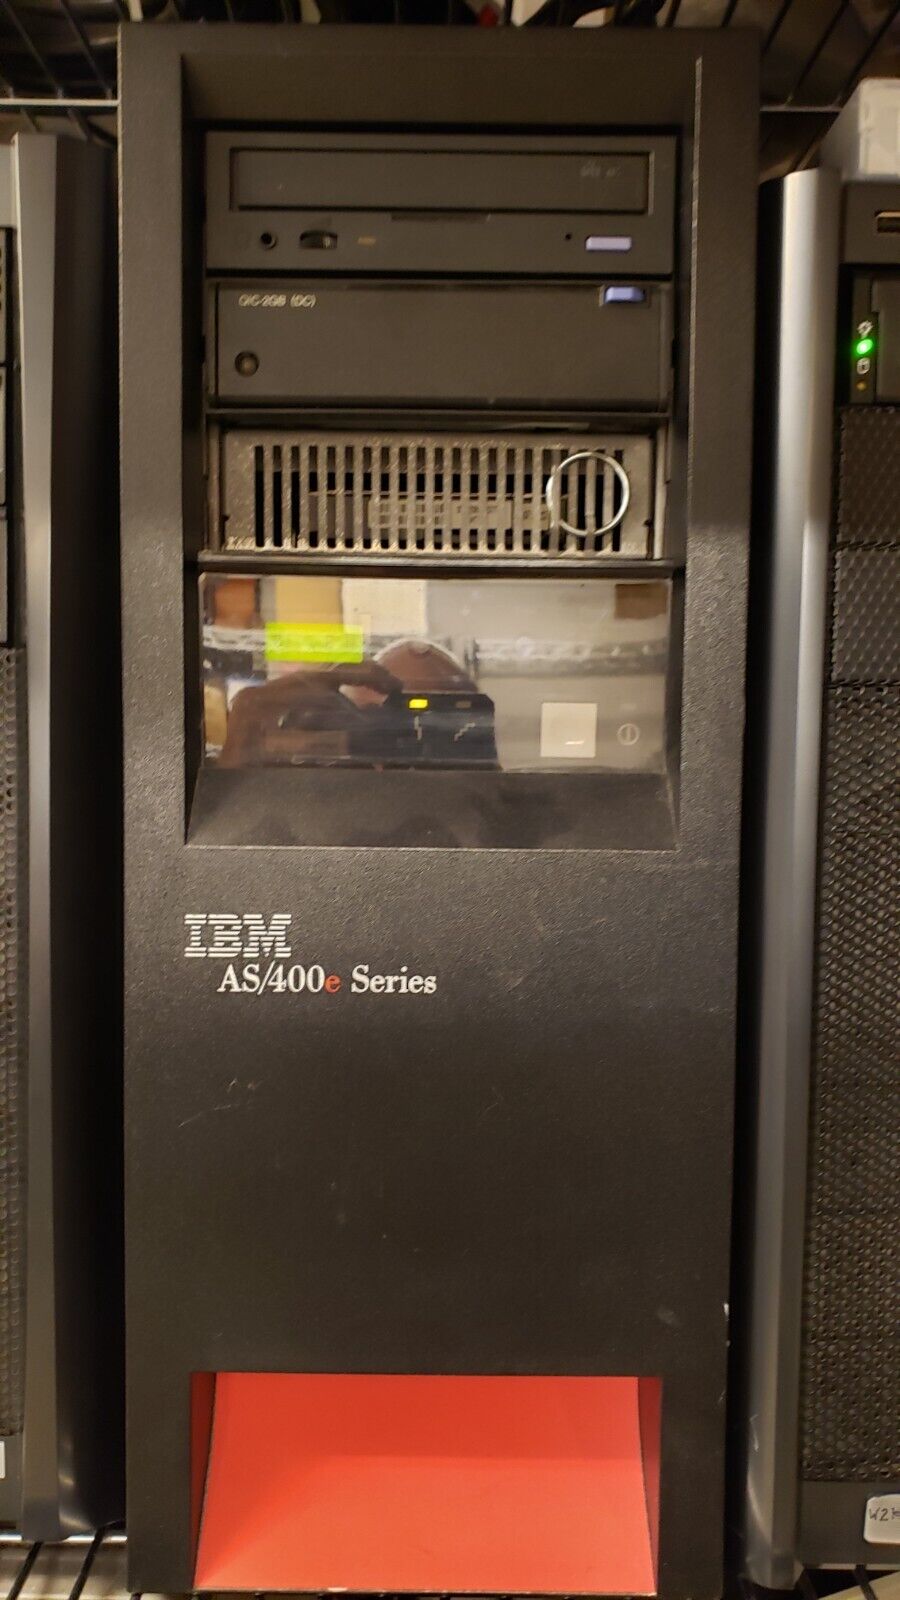 IBM AS400 Model 150 v4r5